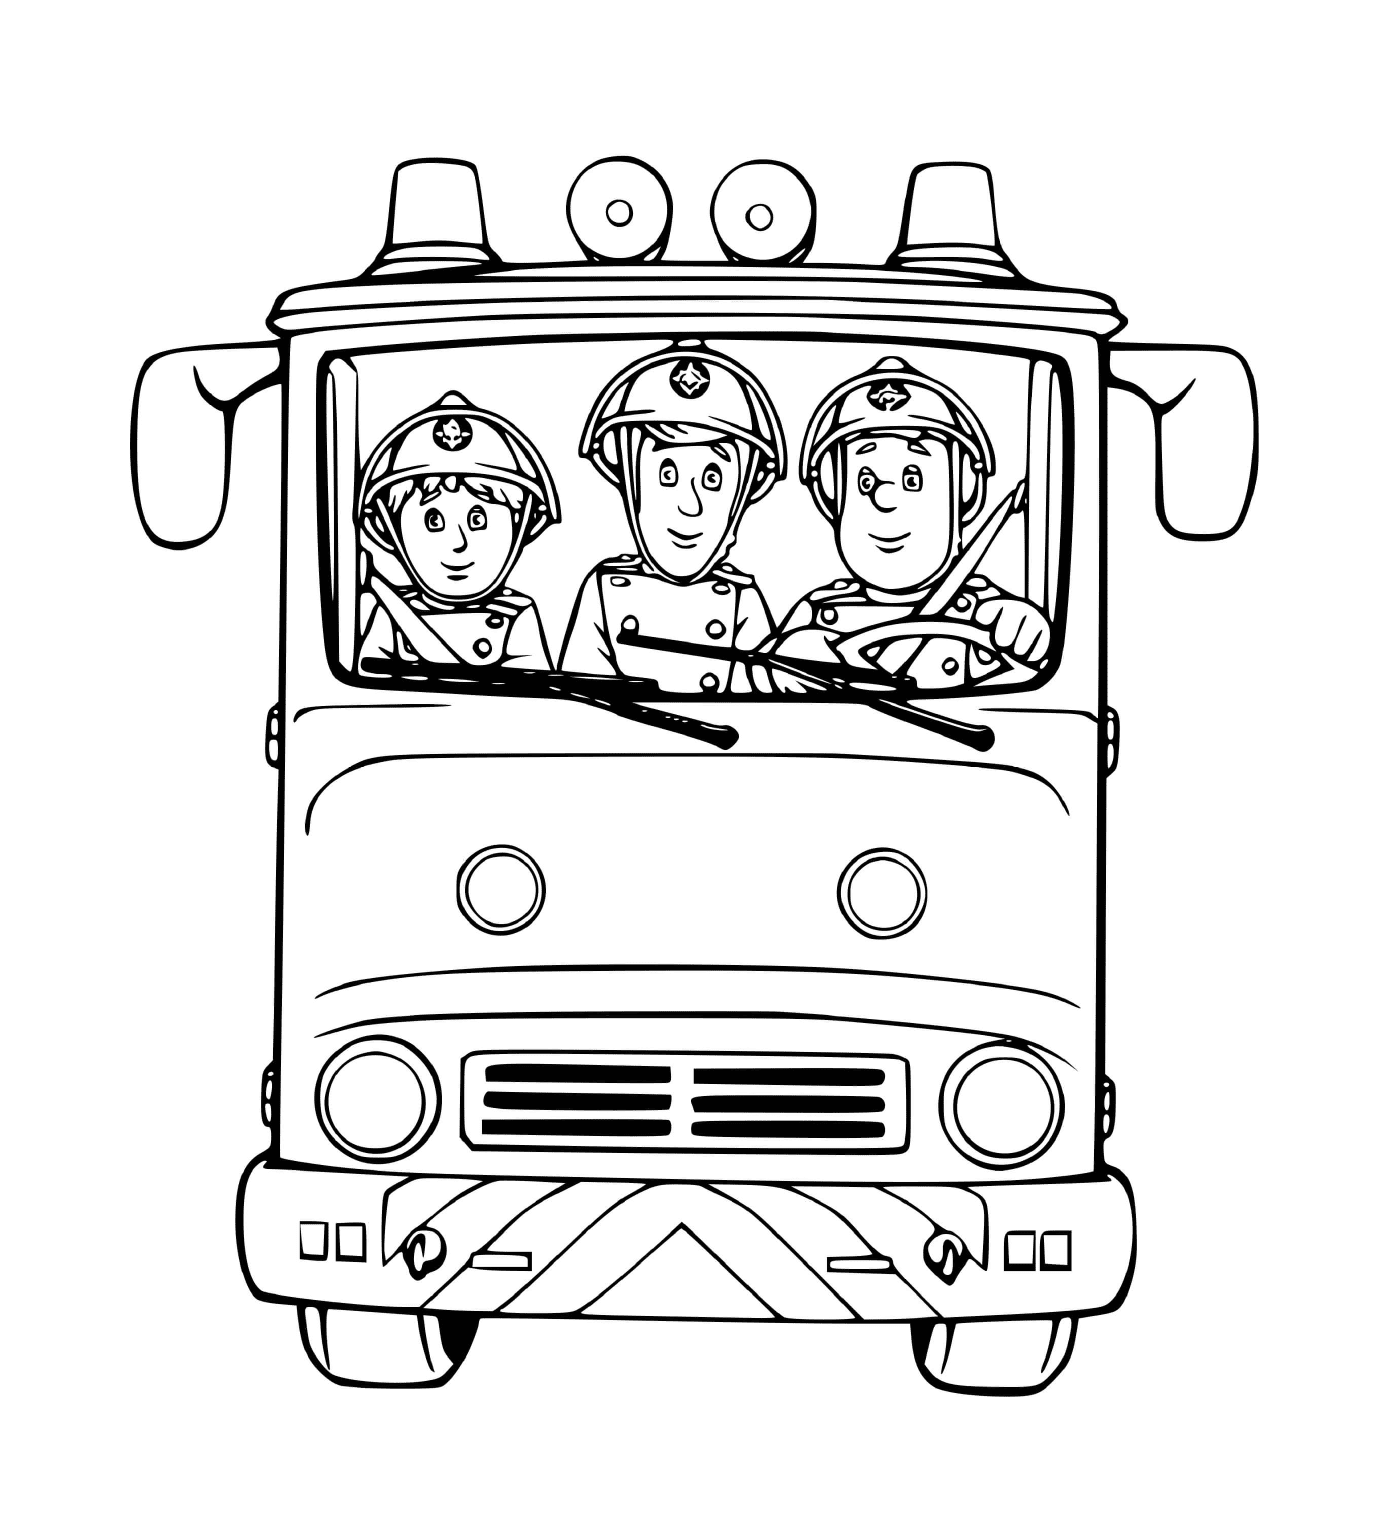  Трое пожарных в грузовике, готовых к действиям 